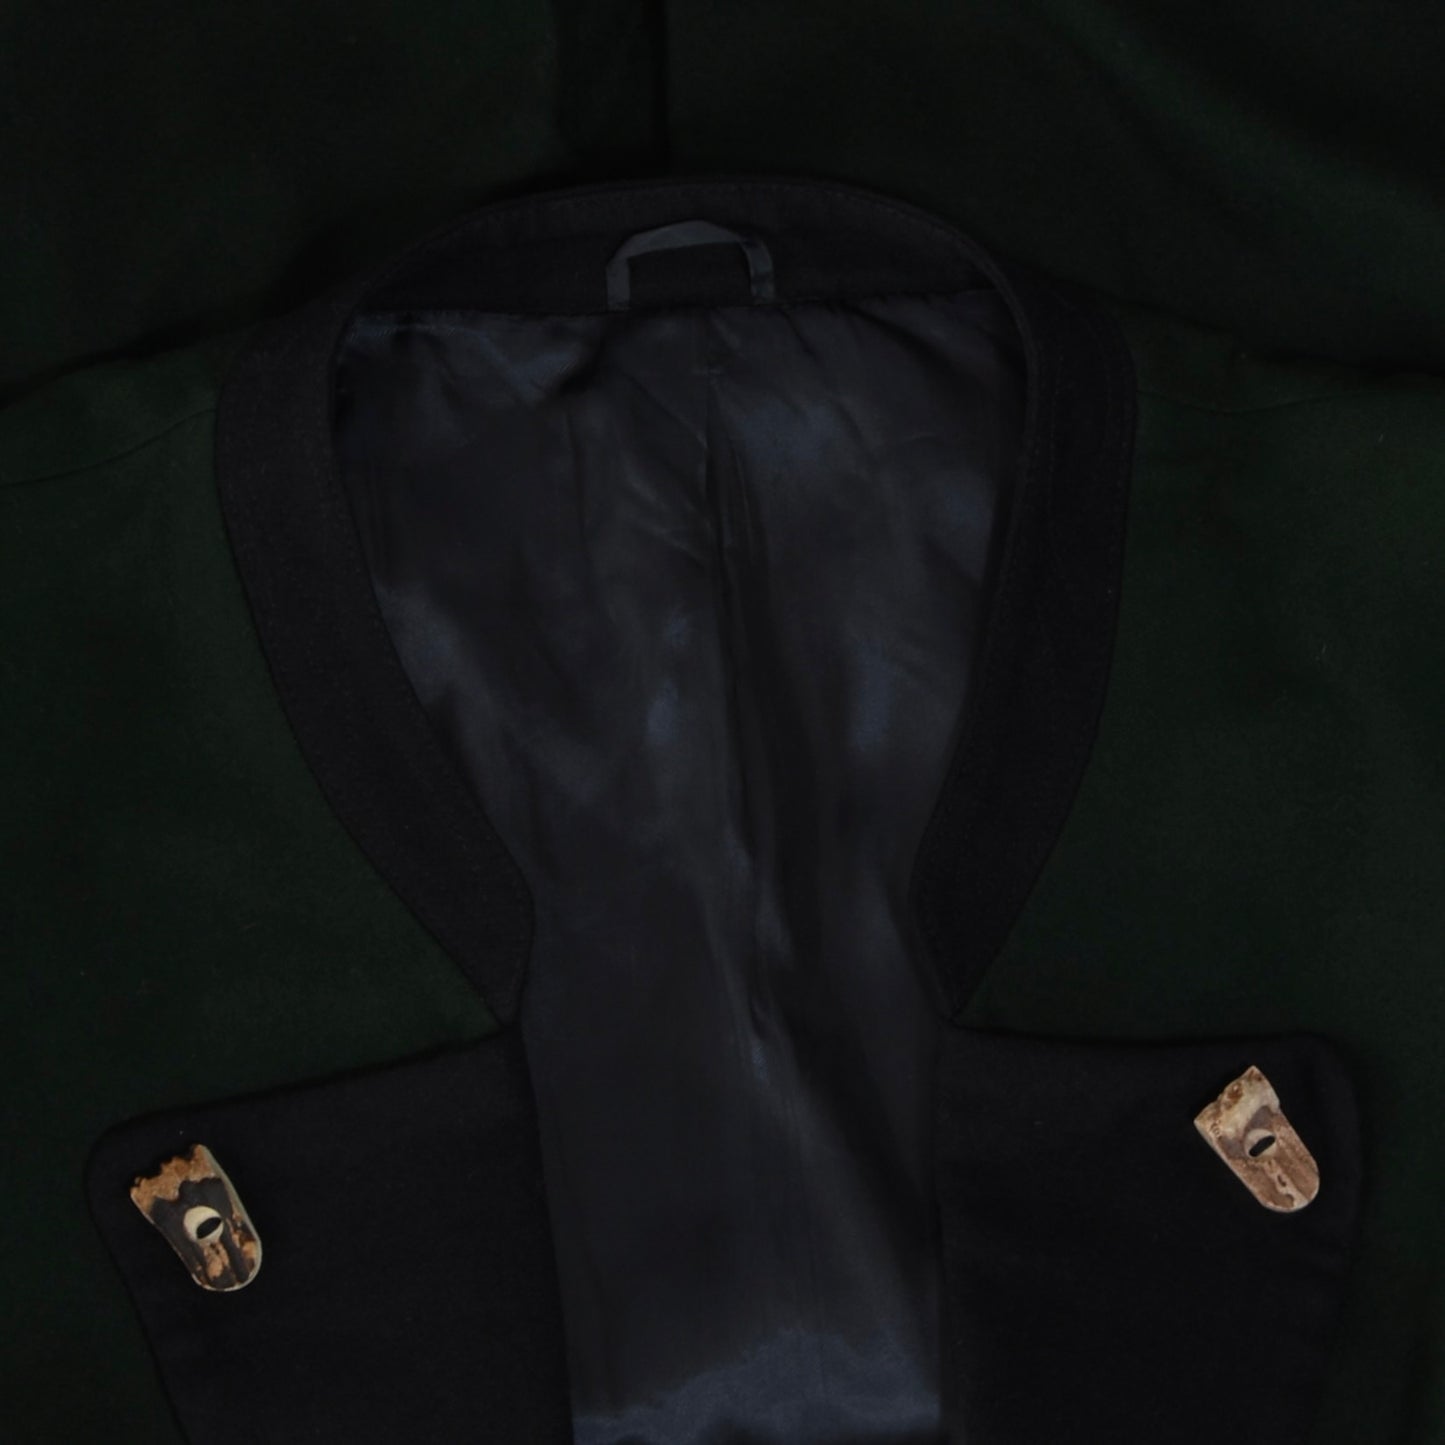 Loden Fürst Wool Janker/Jacket ca. 62.5cm - Green